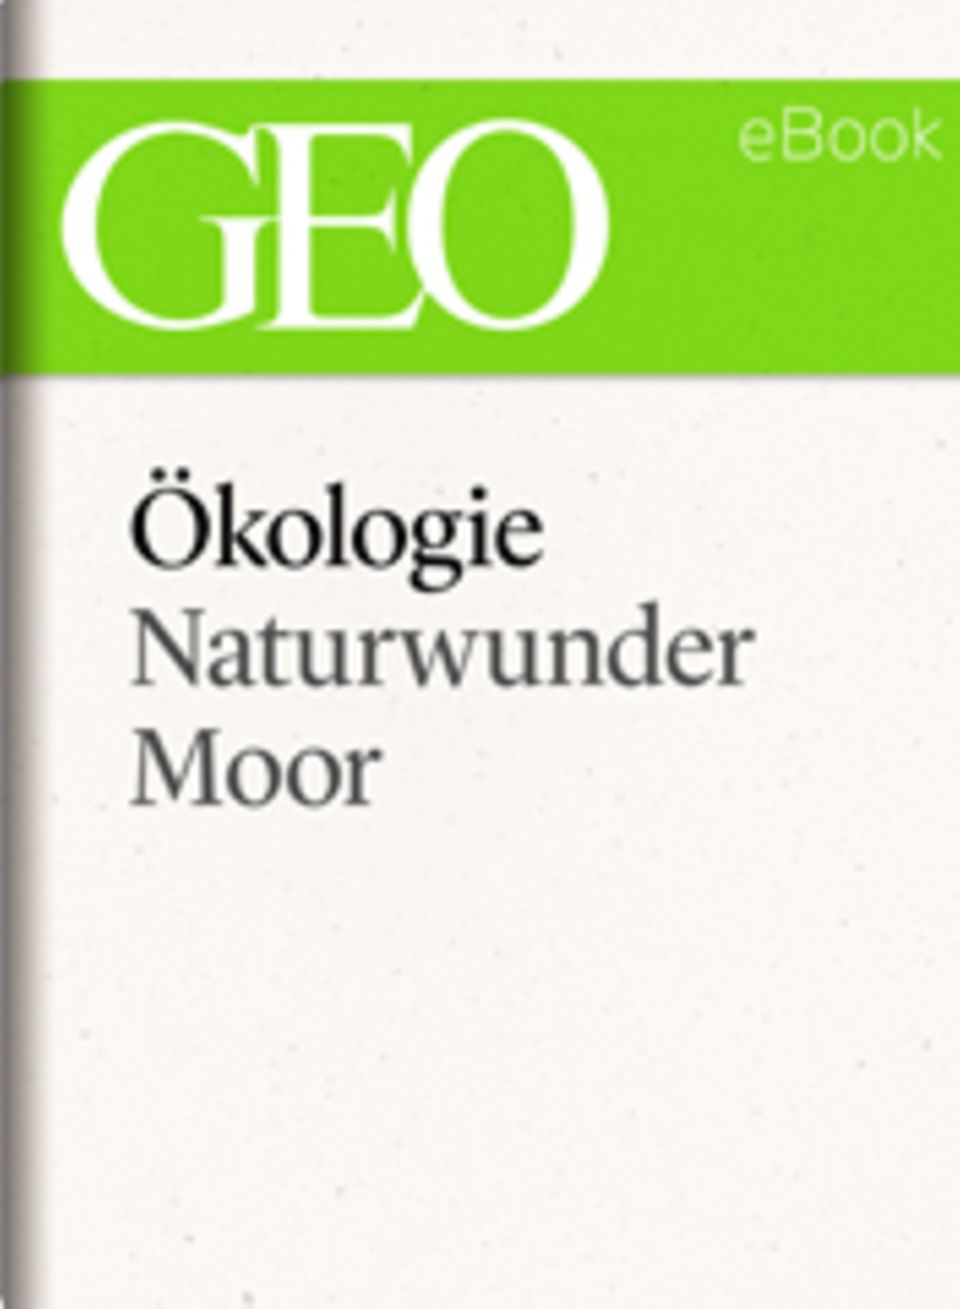 Naturwunder Moor: GEO eBook "Ökologie"